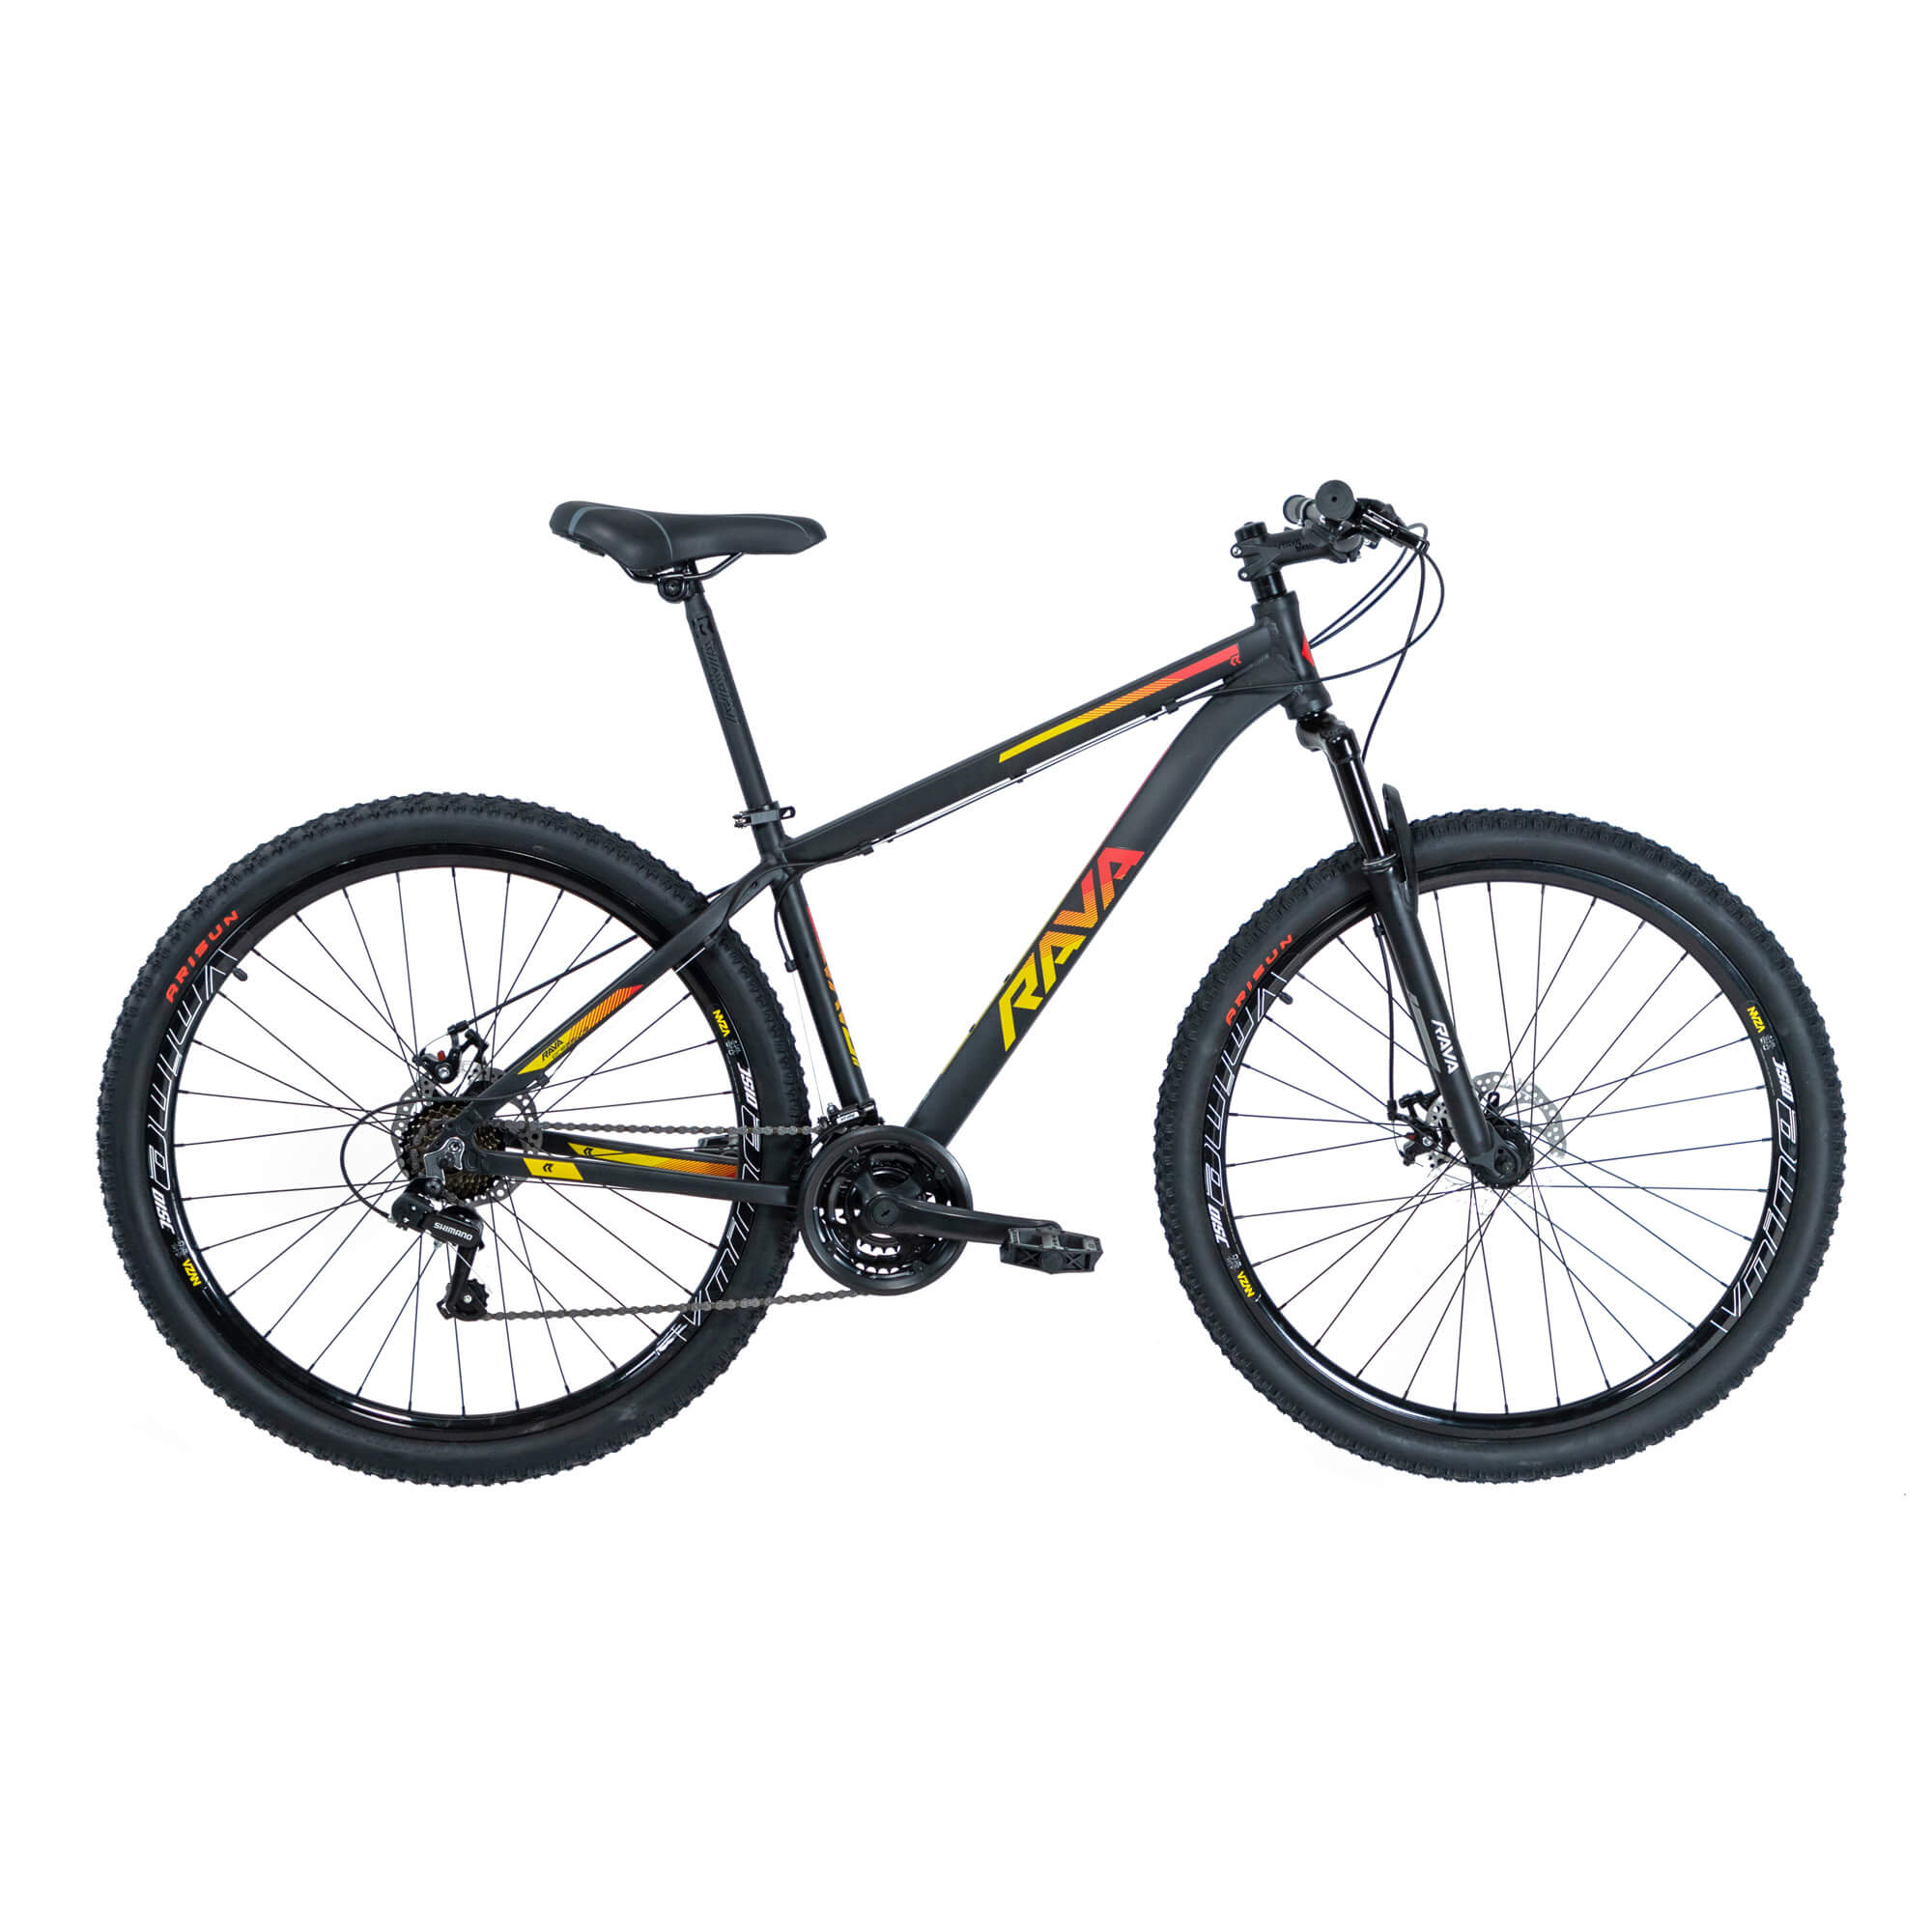 Bicicleta Rava Pressure 2019/2020 | 21 v. - Preto/Vermelho/Amarelo, 15.5"